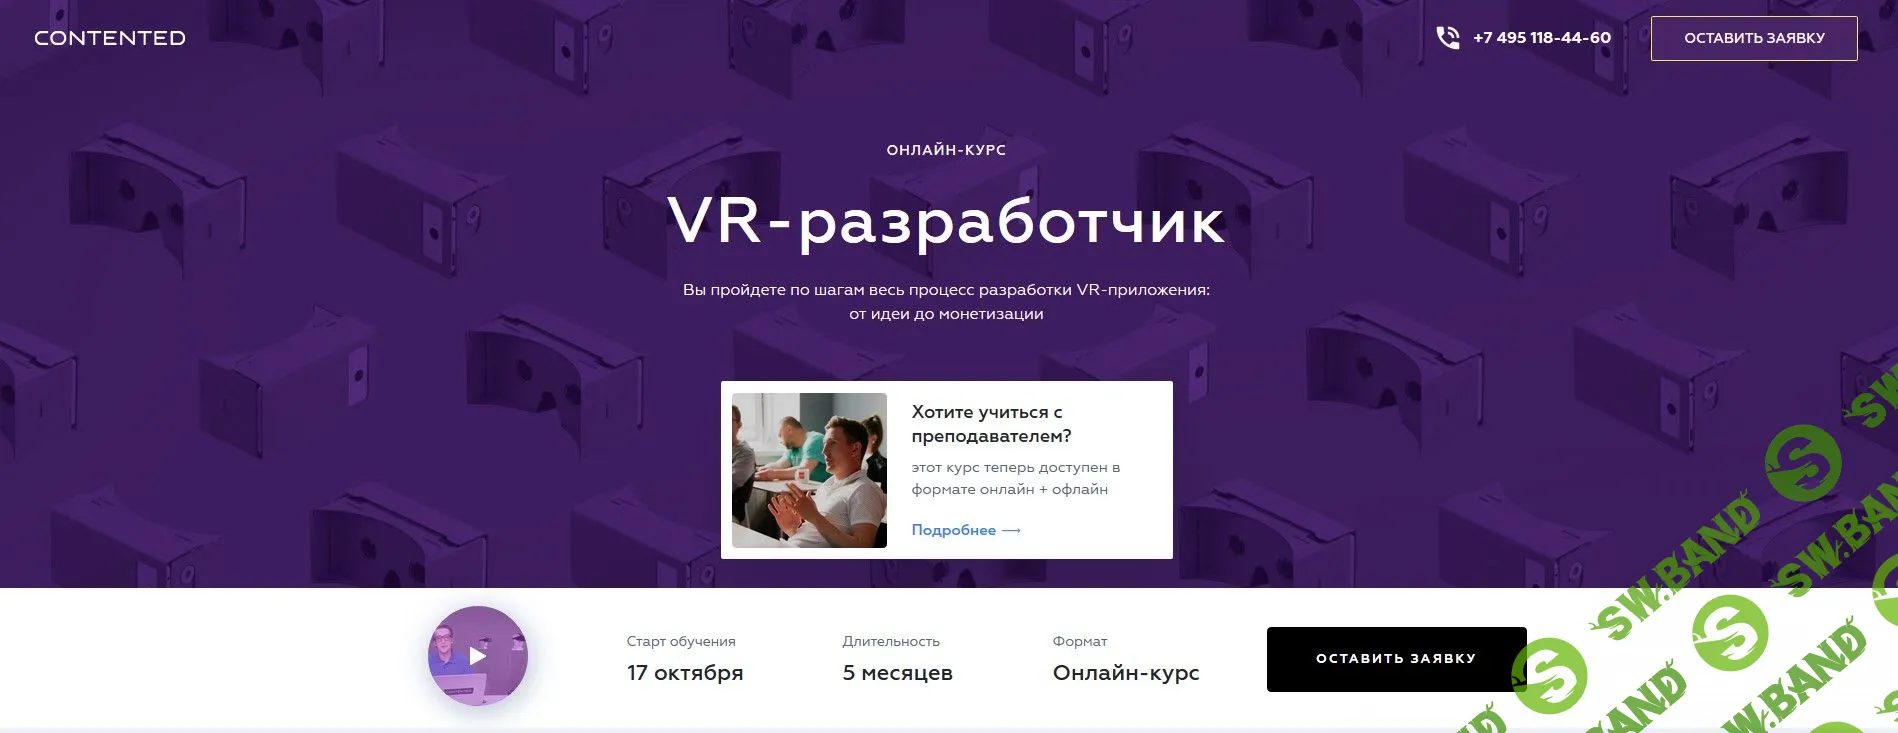 [Contented] VR-разработчик. Разработки VR-приложения: от идеи до монетизации (2018)